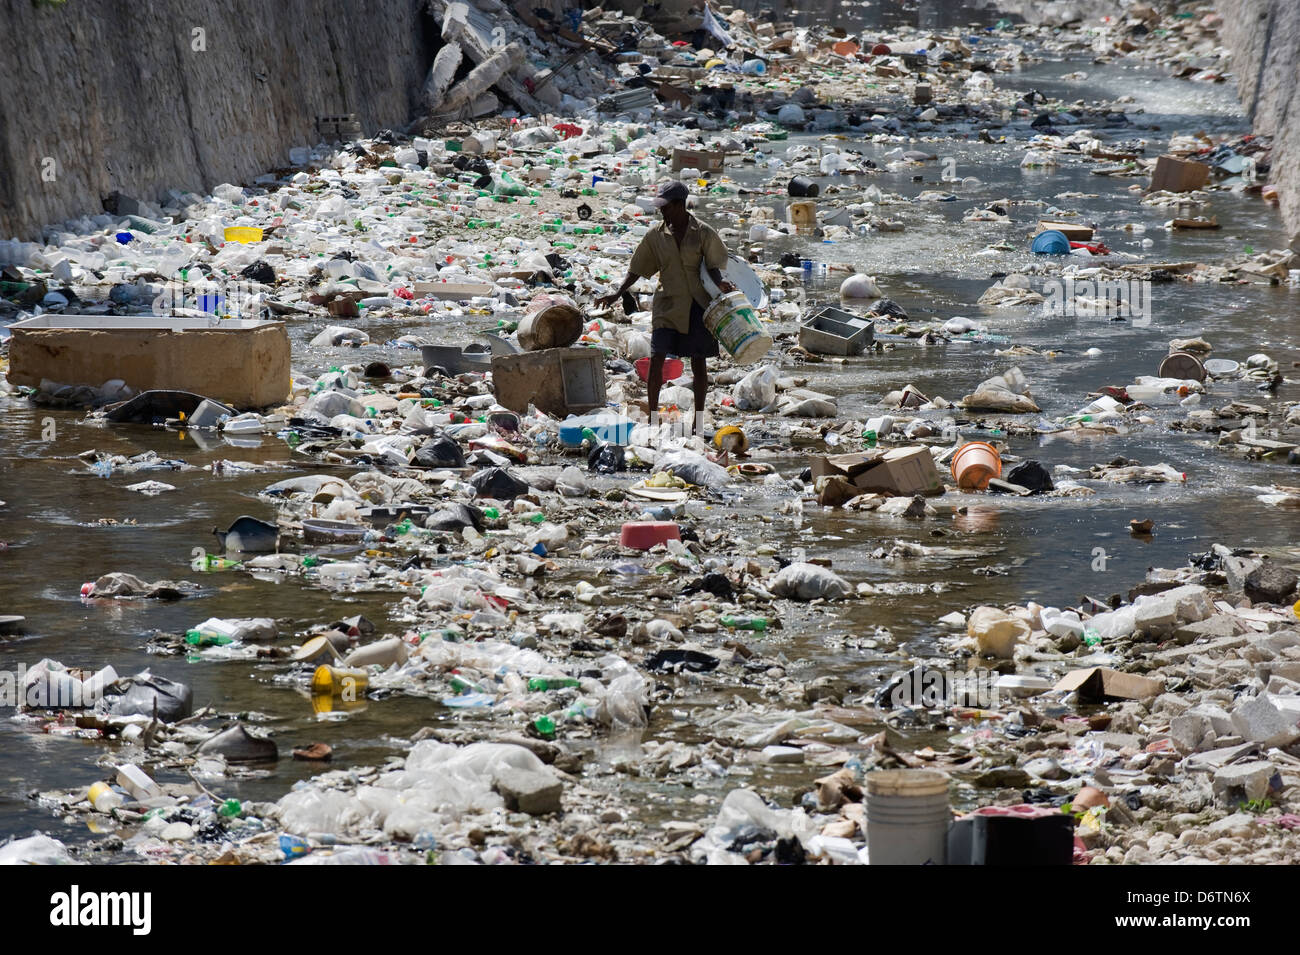 hombre-mirando-un-rio-lleno-de-basura-port-au-prince-haiti-el-caribe-d6tn6x.jpg